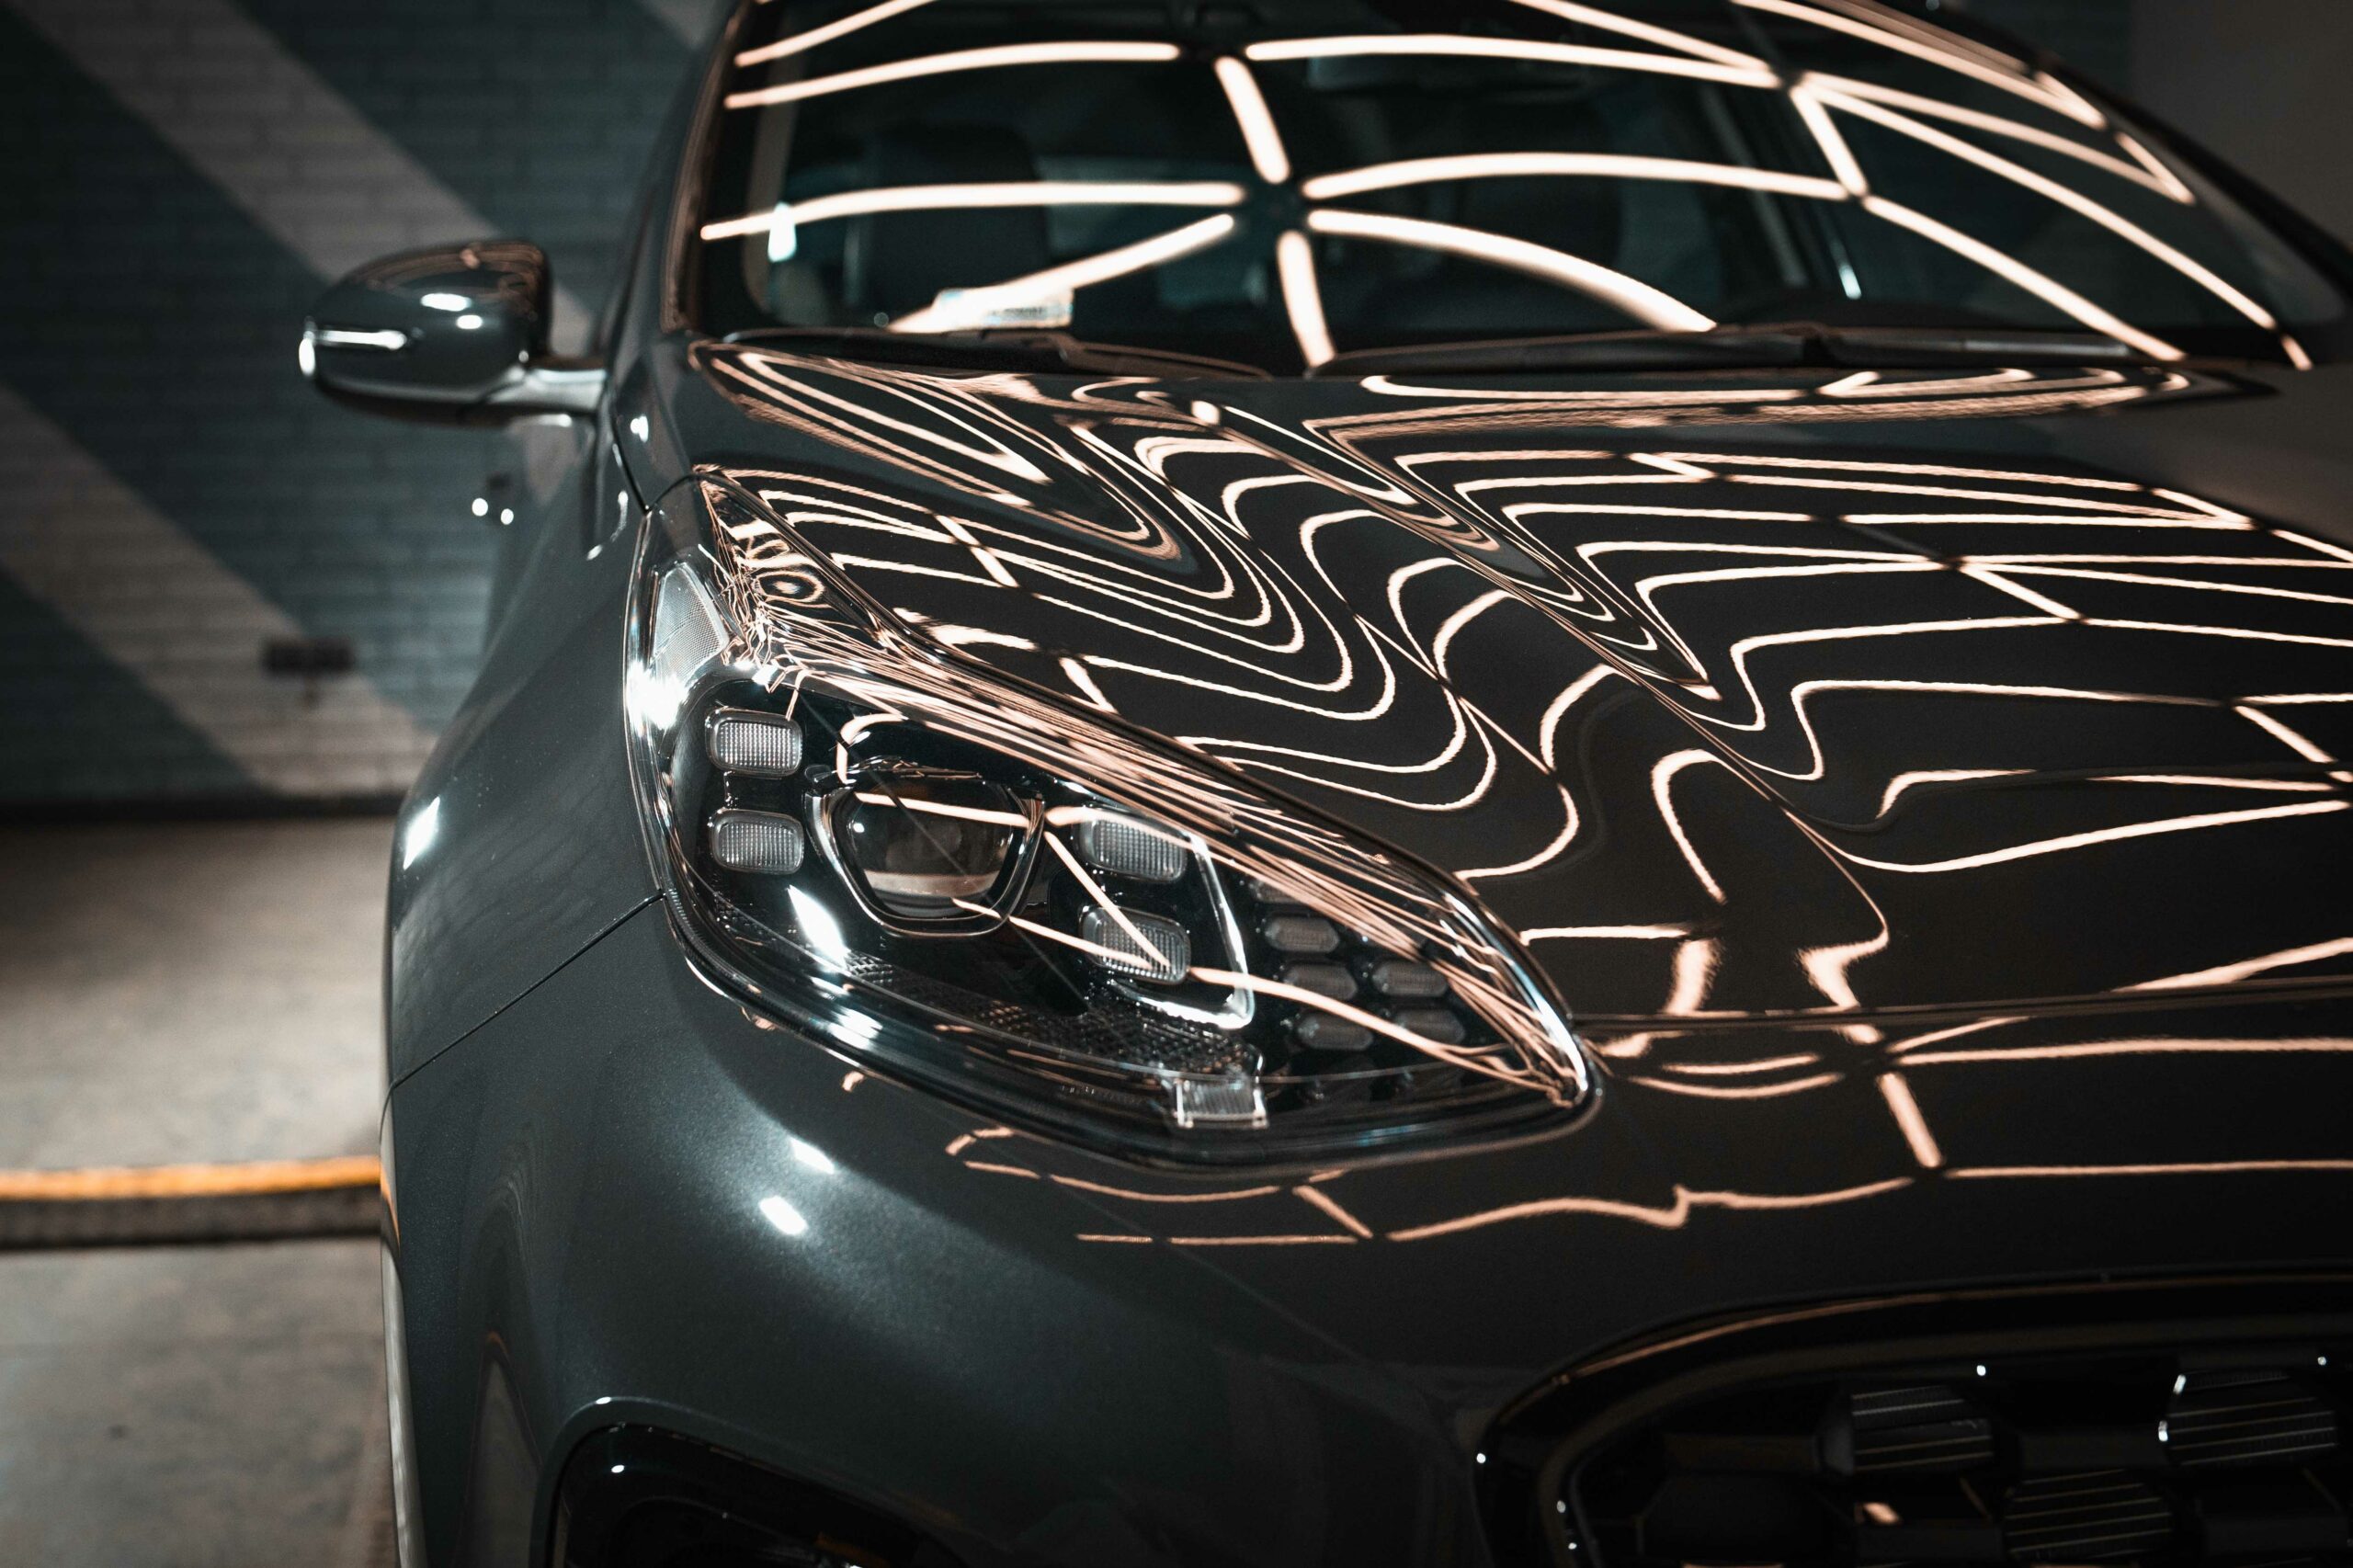 Samochód Kia Sportage z refleksami światła na masce